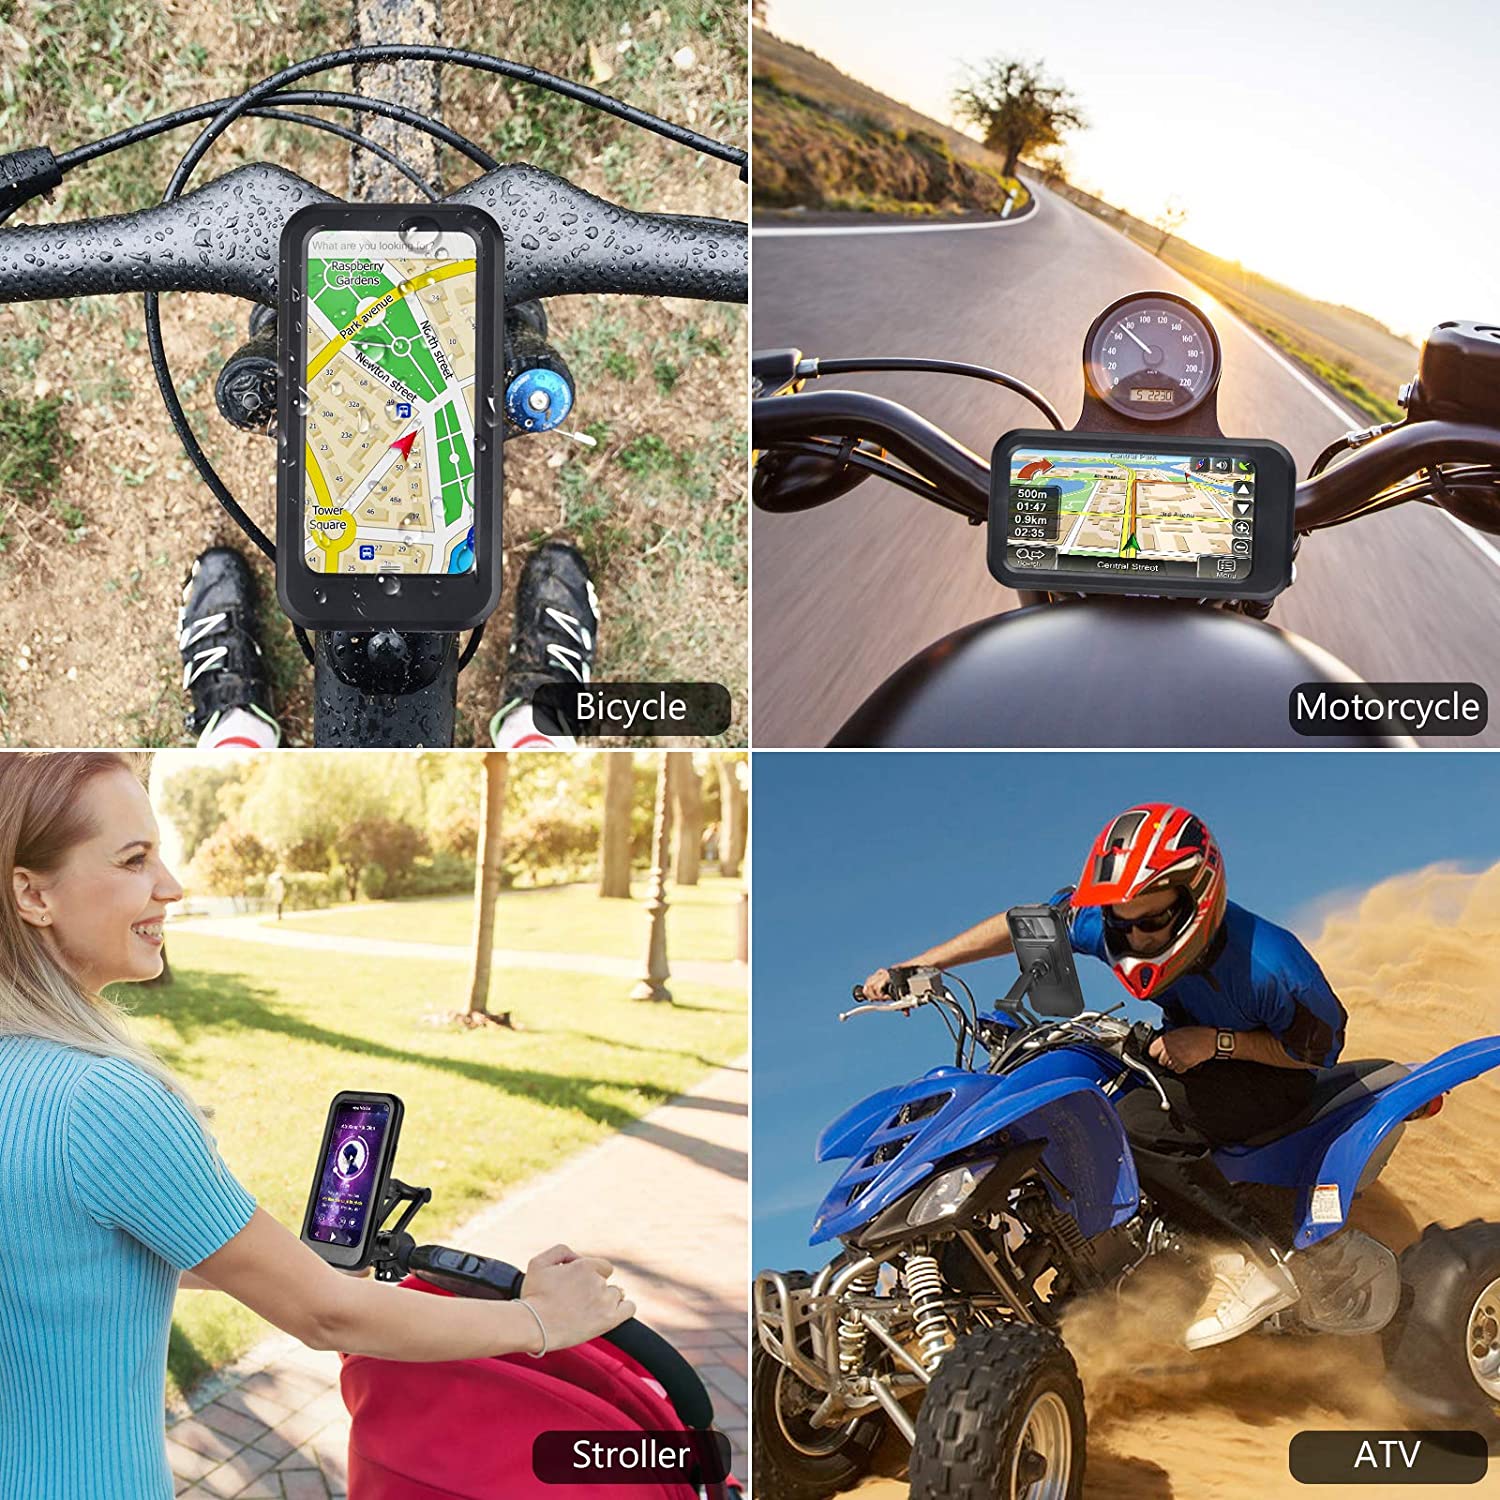 Universal Waterproof Bicycle Phone Holder Bike Motorcycle Handlebar Mobile Phone Stand Mount Waterproof Cell Phone Bracket Case